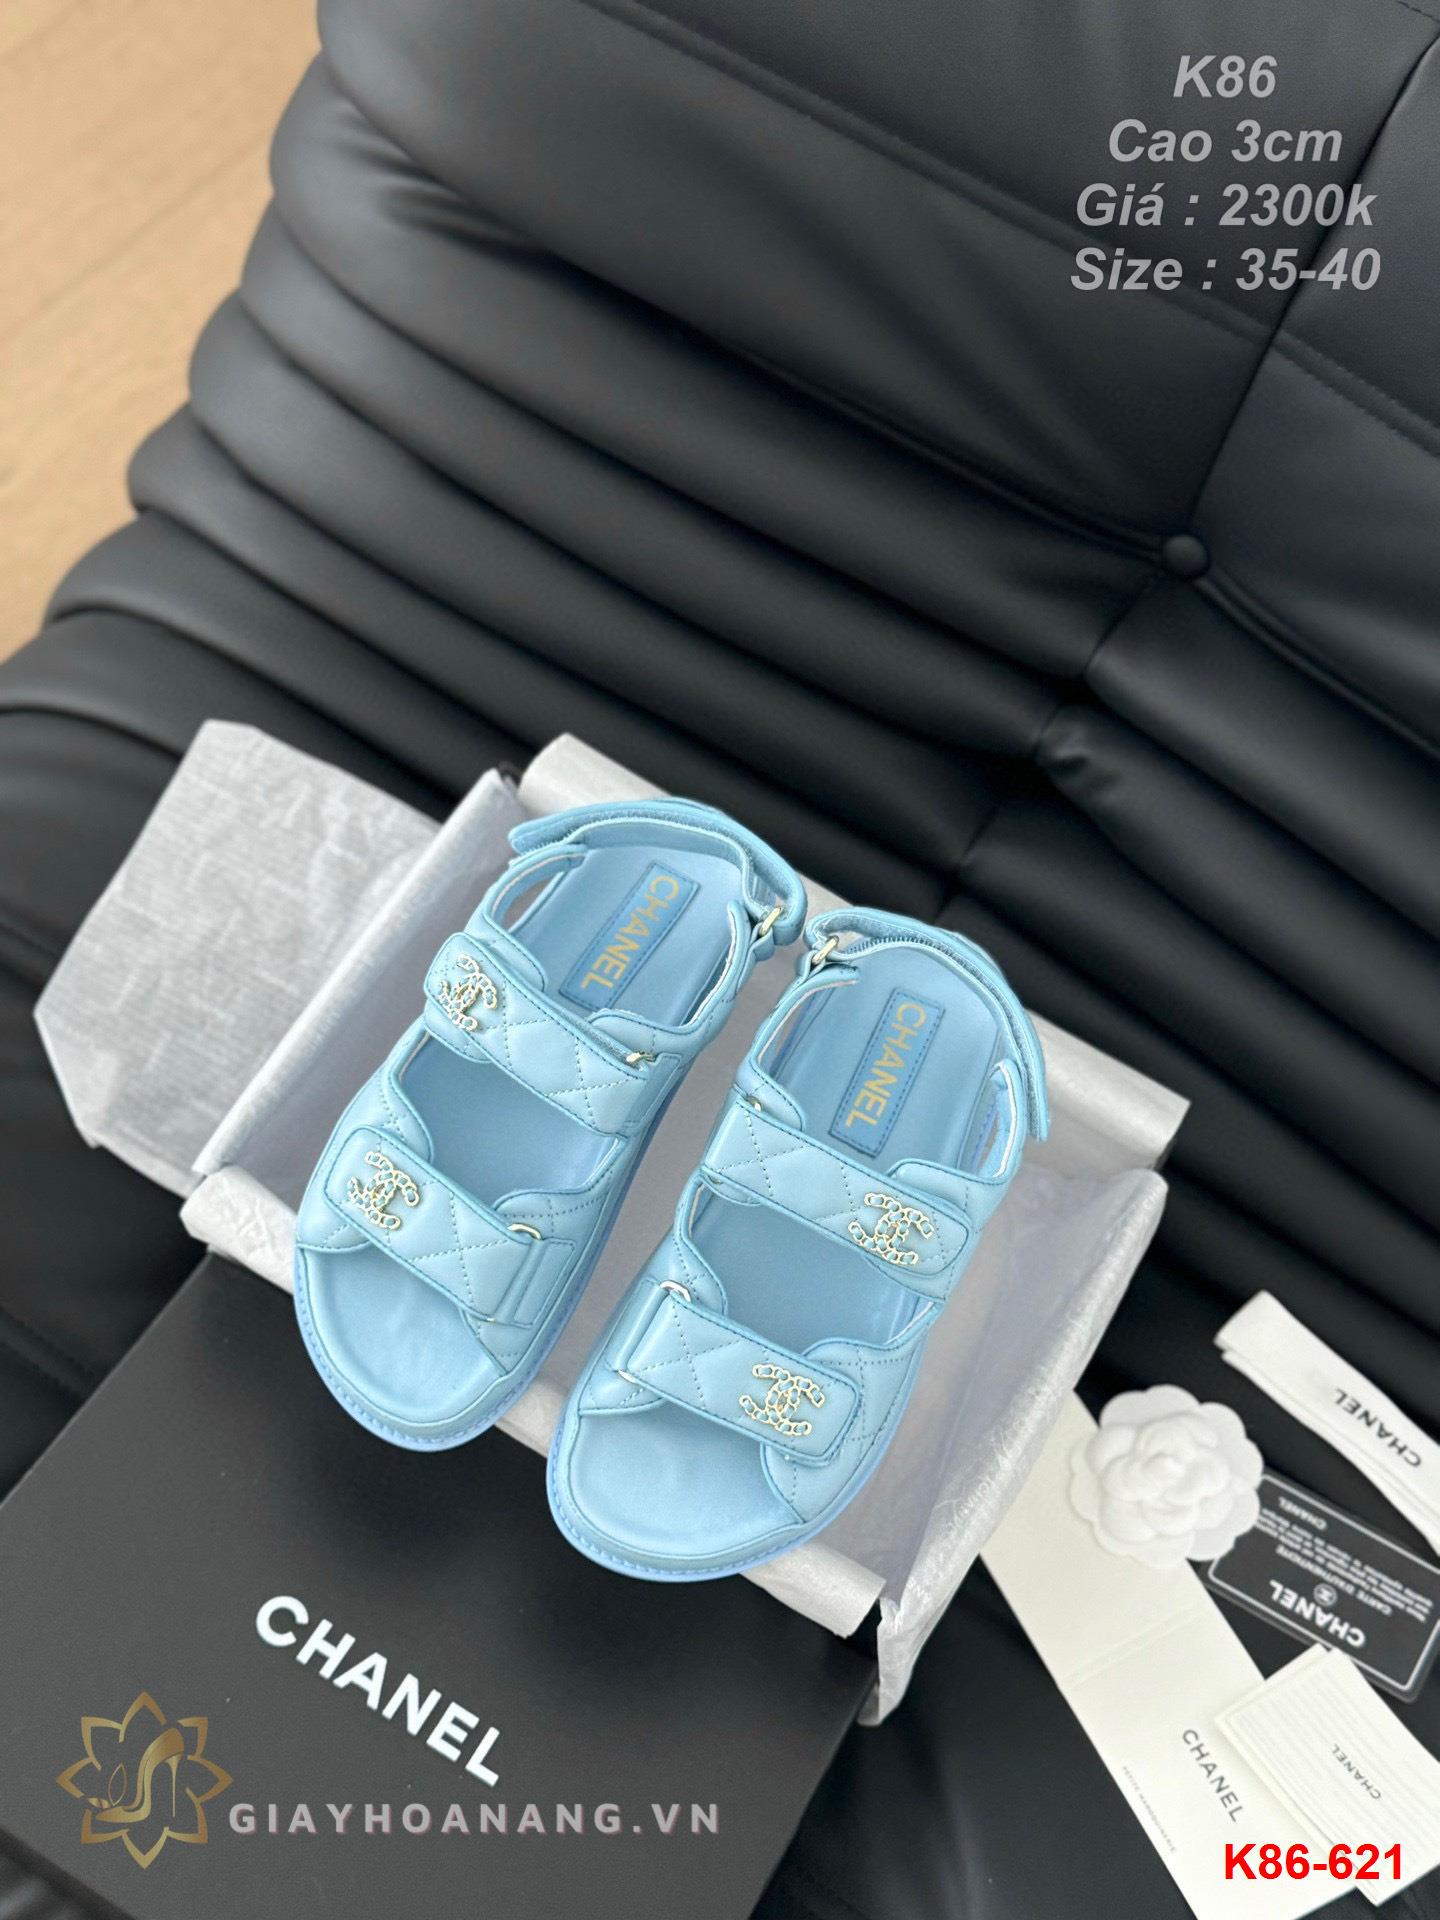 K86-621 Chanel sandal cao gót 3cm siêu cấp